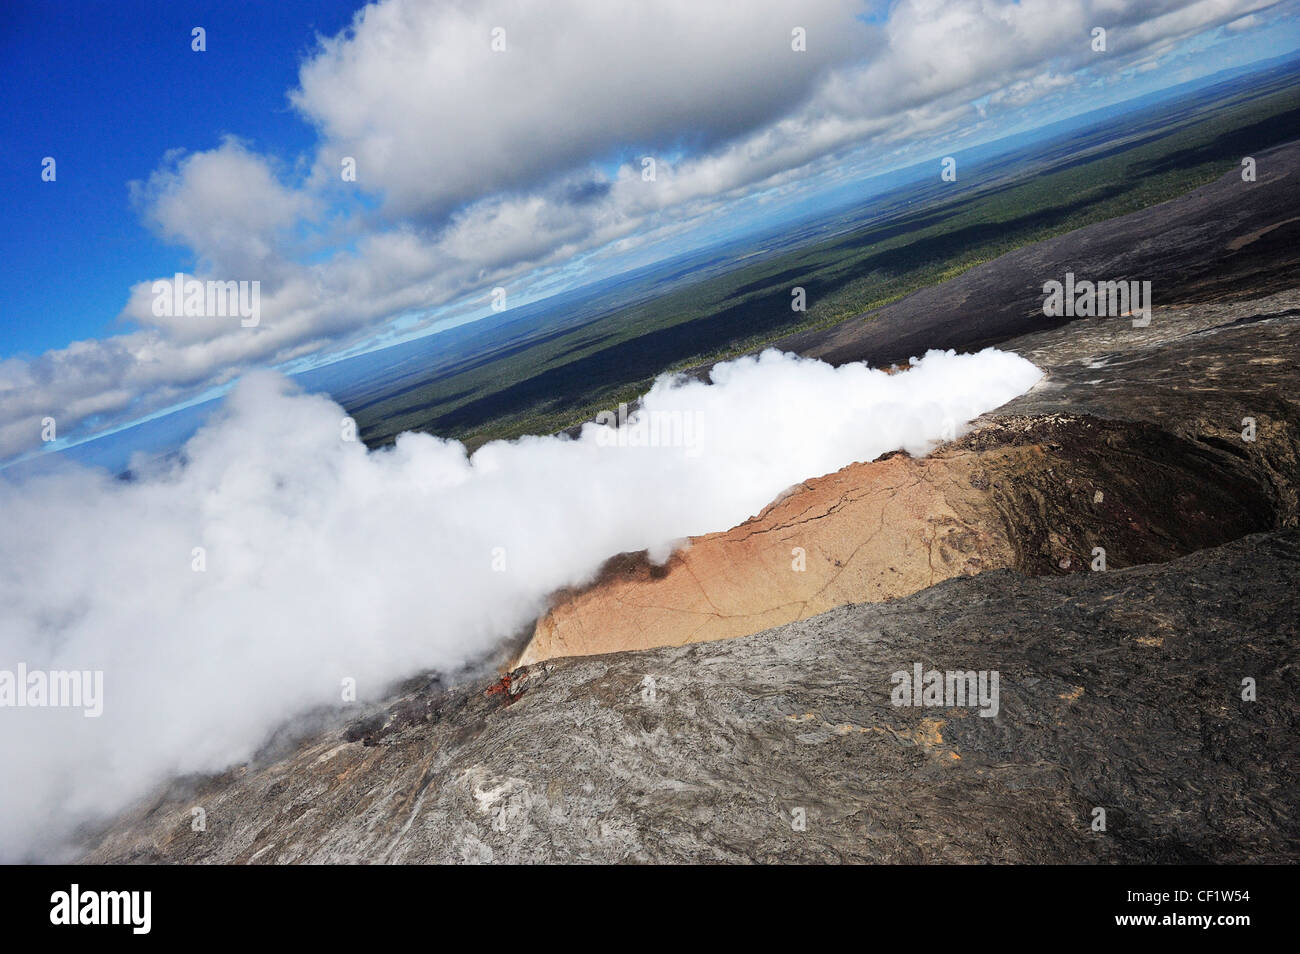 Vulcano - Pu'u'O'o o Puu Oo cratere - Vista aerea - Kilauea, Hawaii Foto Stock